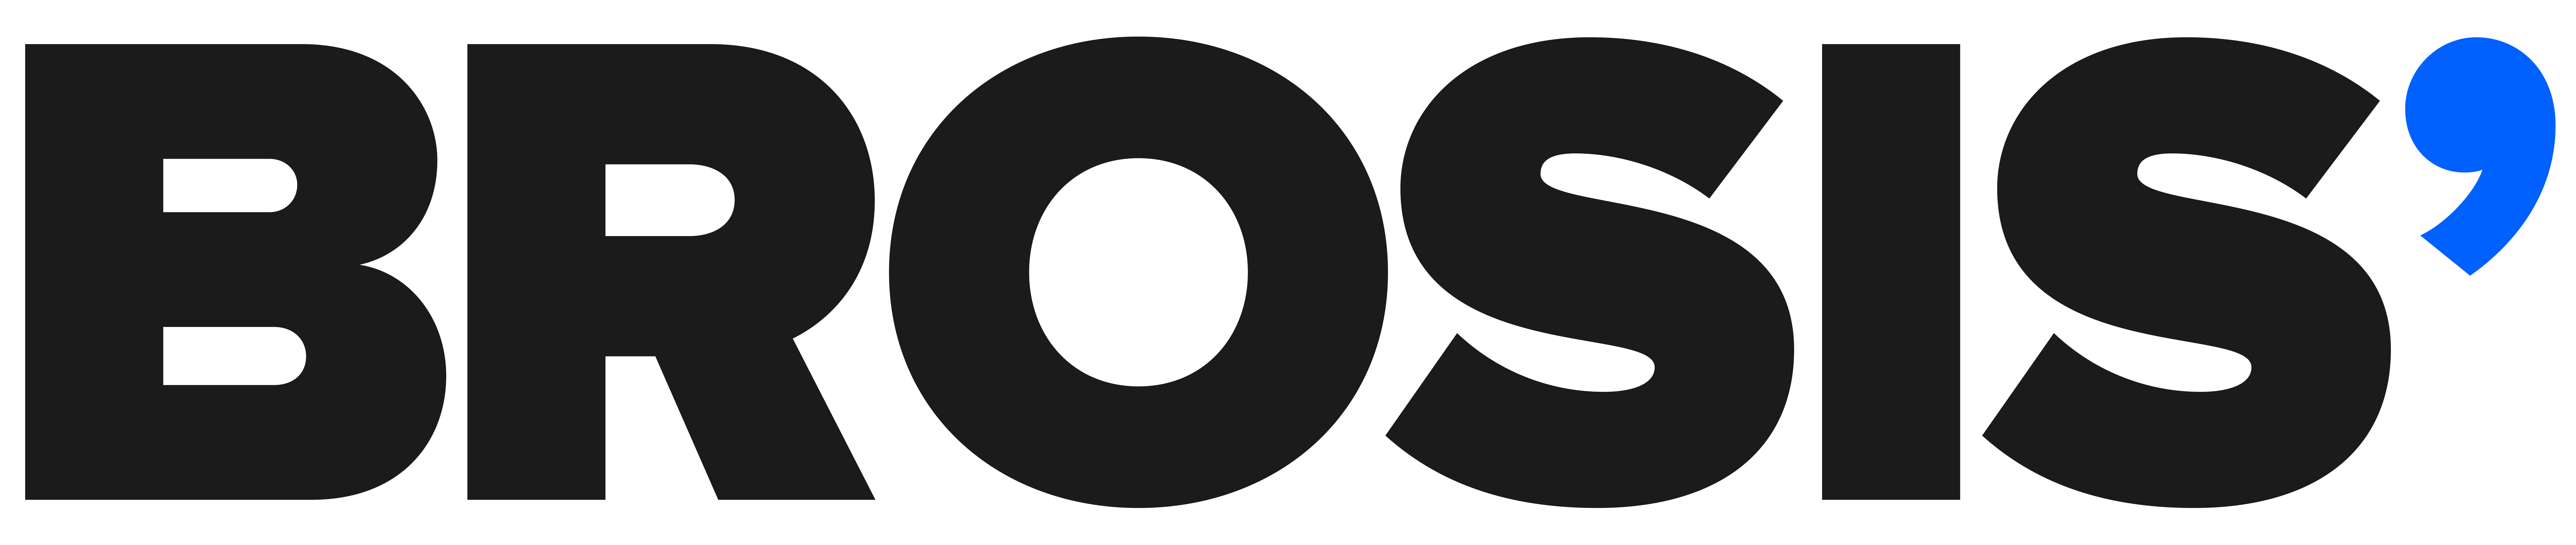 Logo Brosis